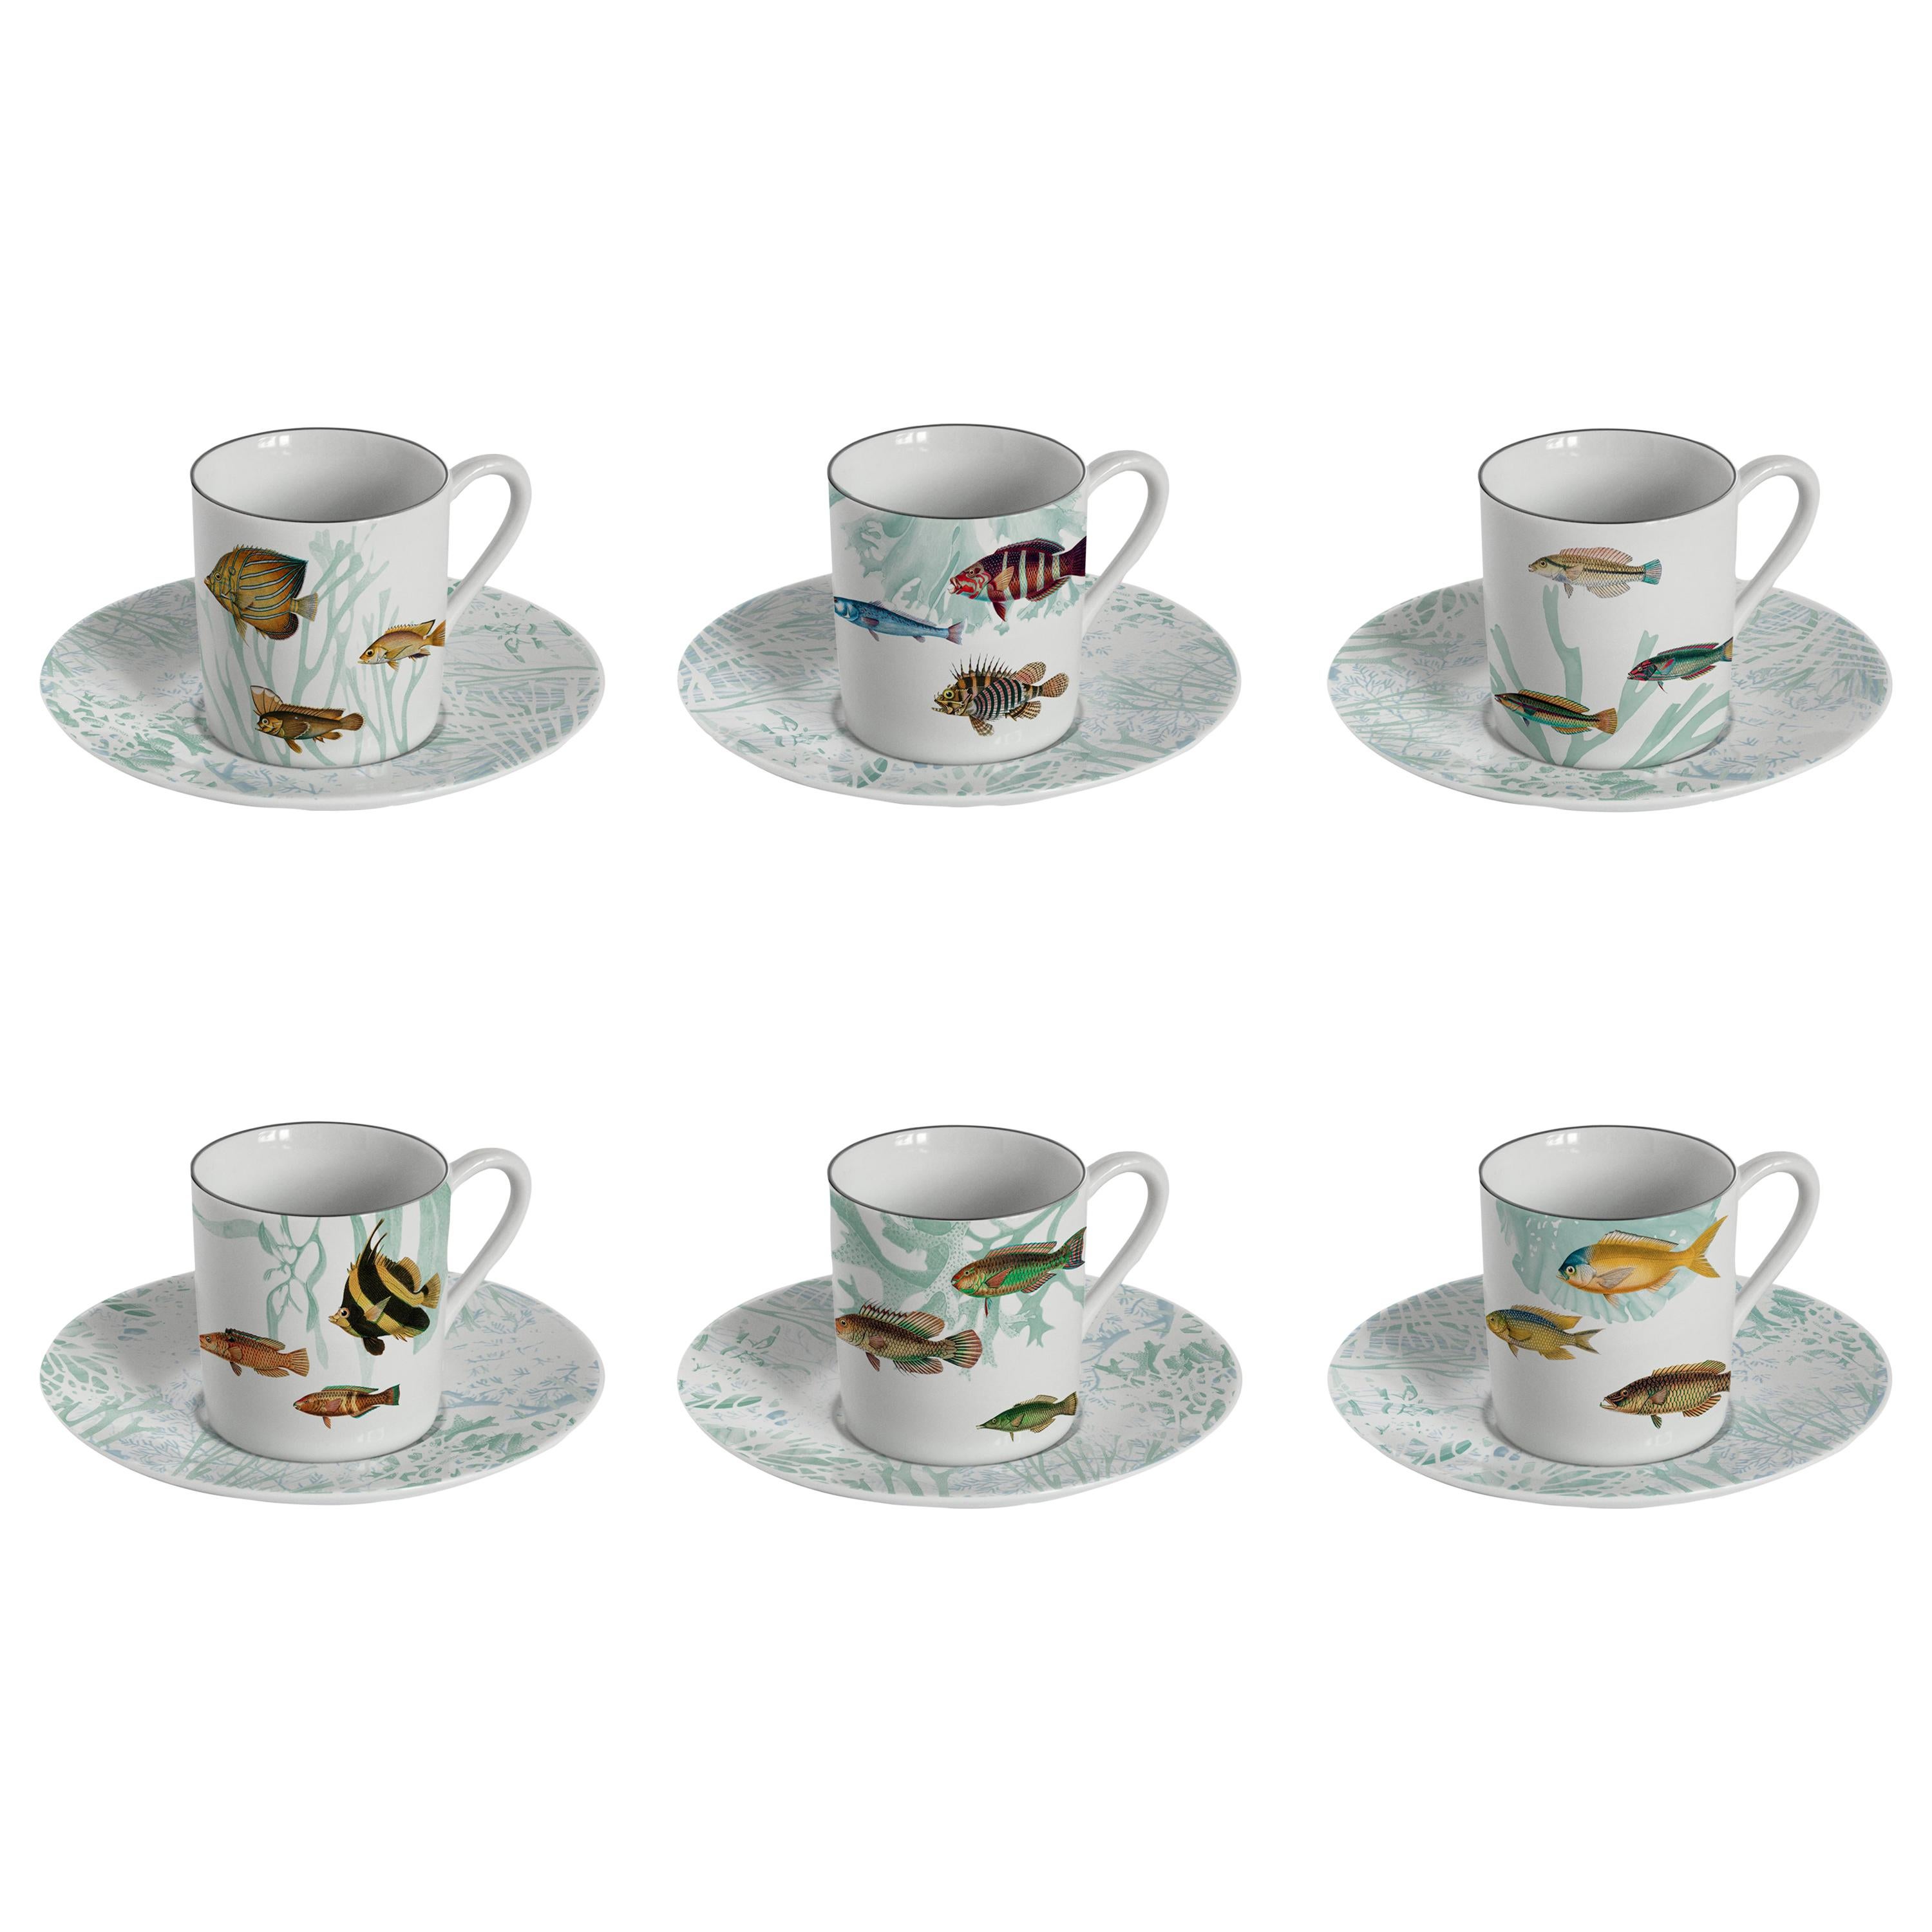 Amami:: Kaffeeservice mit sechs zeitgenössischen Porzellanen mit dekorativem Design